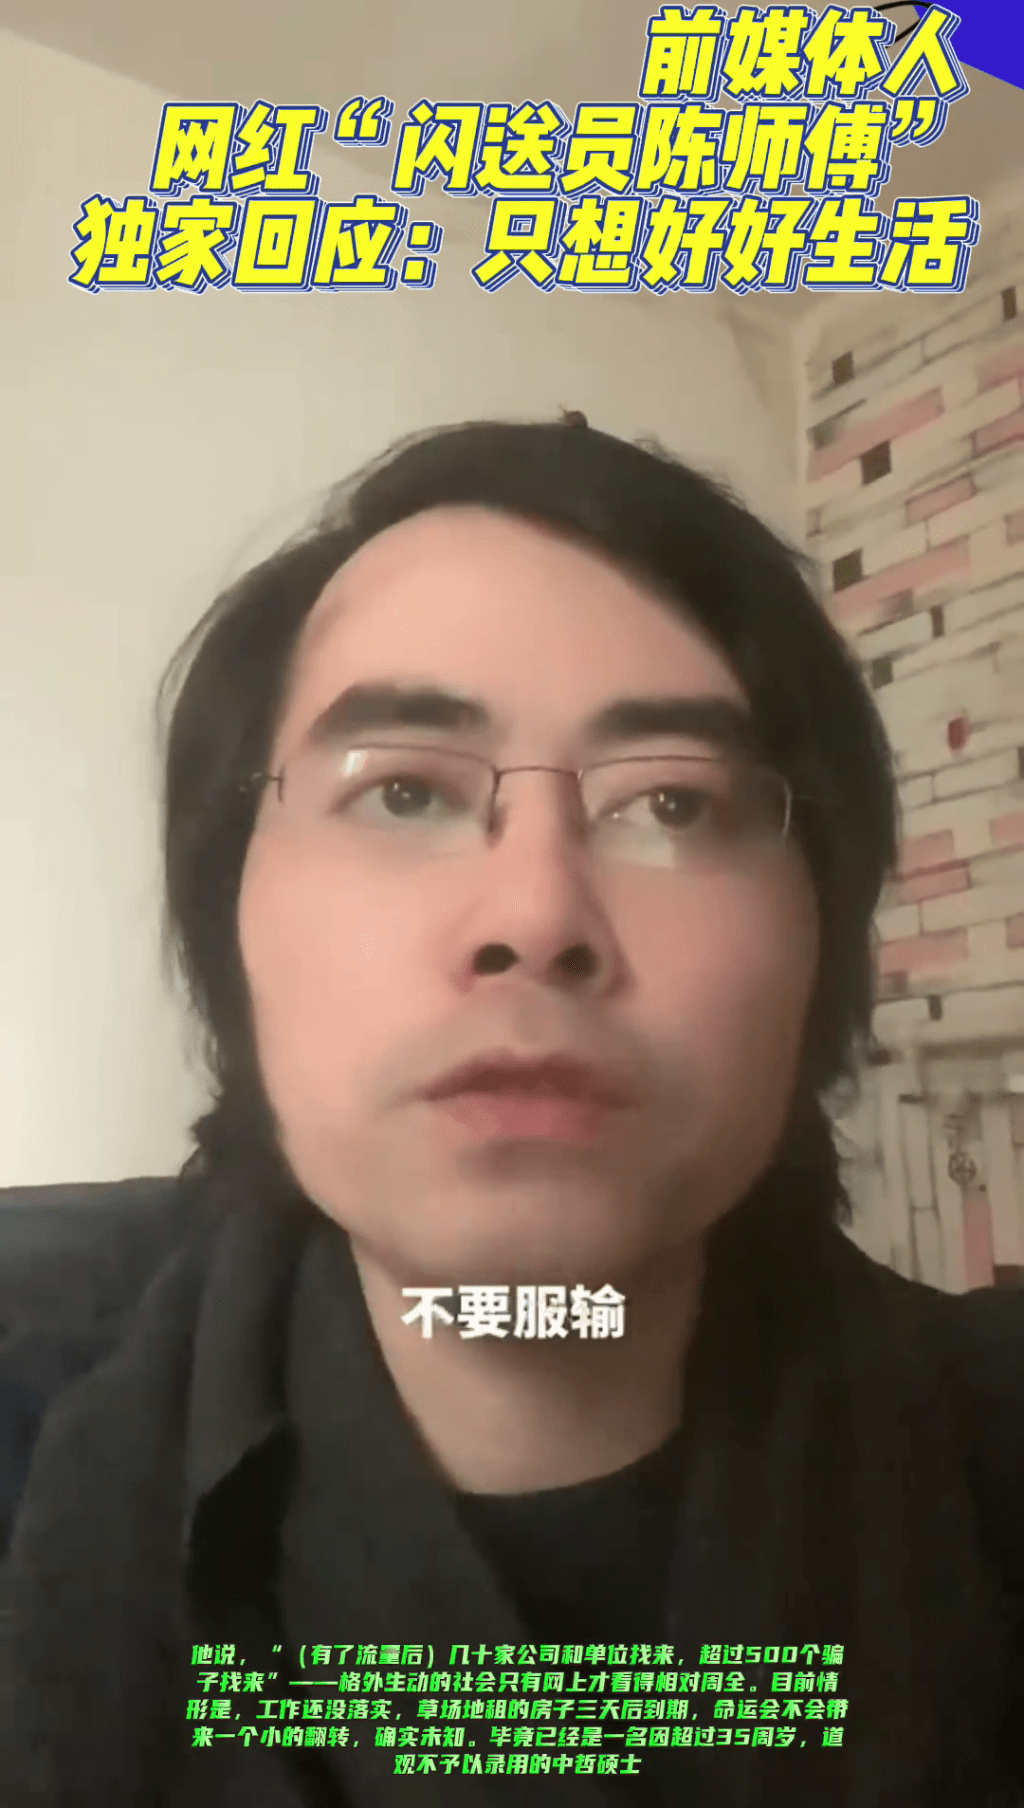 「閃送員陳師傅」在最新發布的影片表示不認命、不服輸。